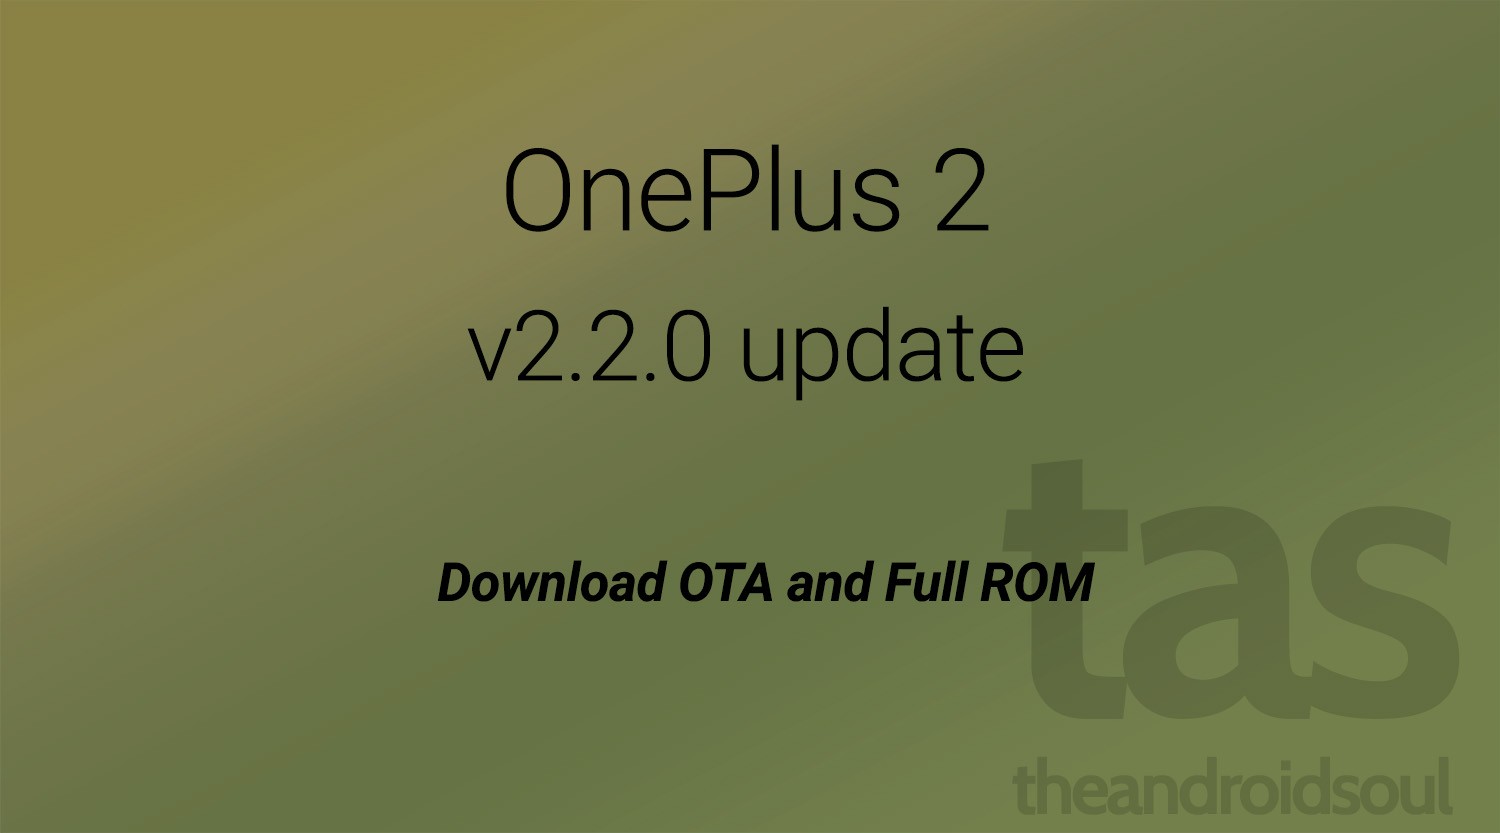 Descargue la actualización OTA y ROM completa de OnePlus 2 Oxygen OS 2.2.0